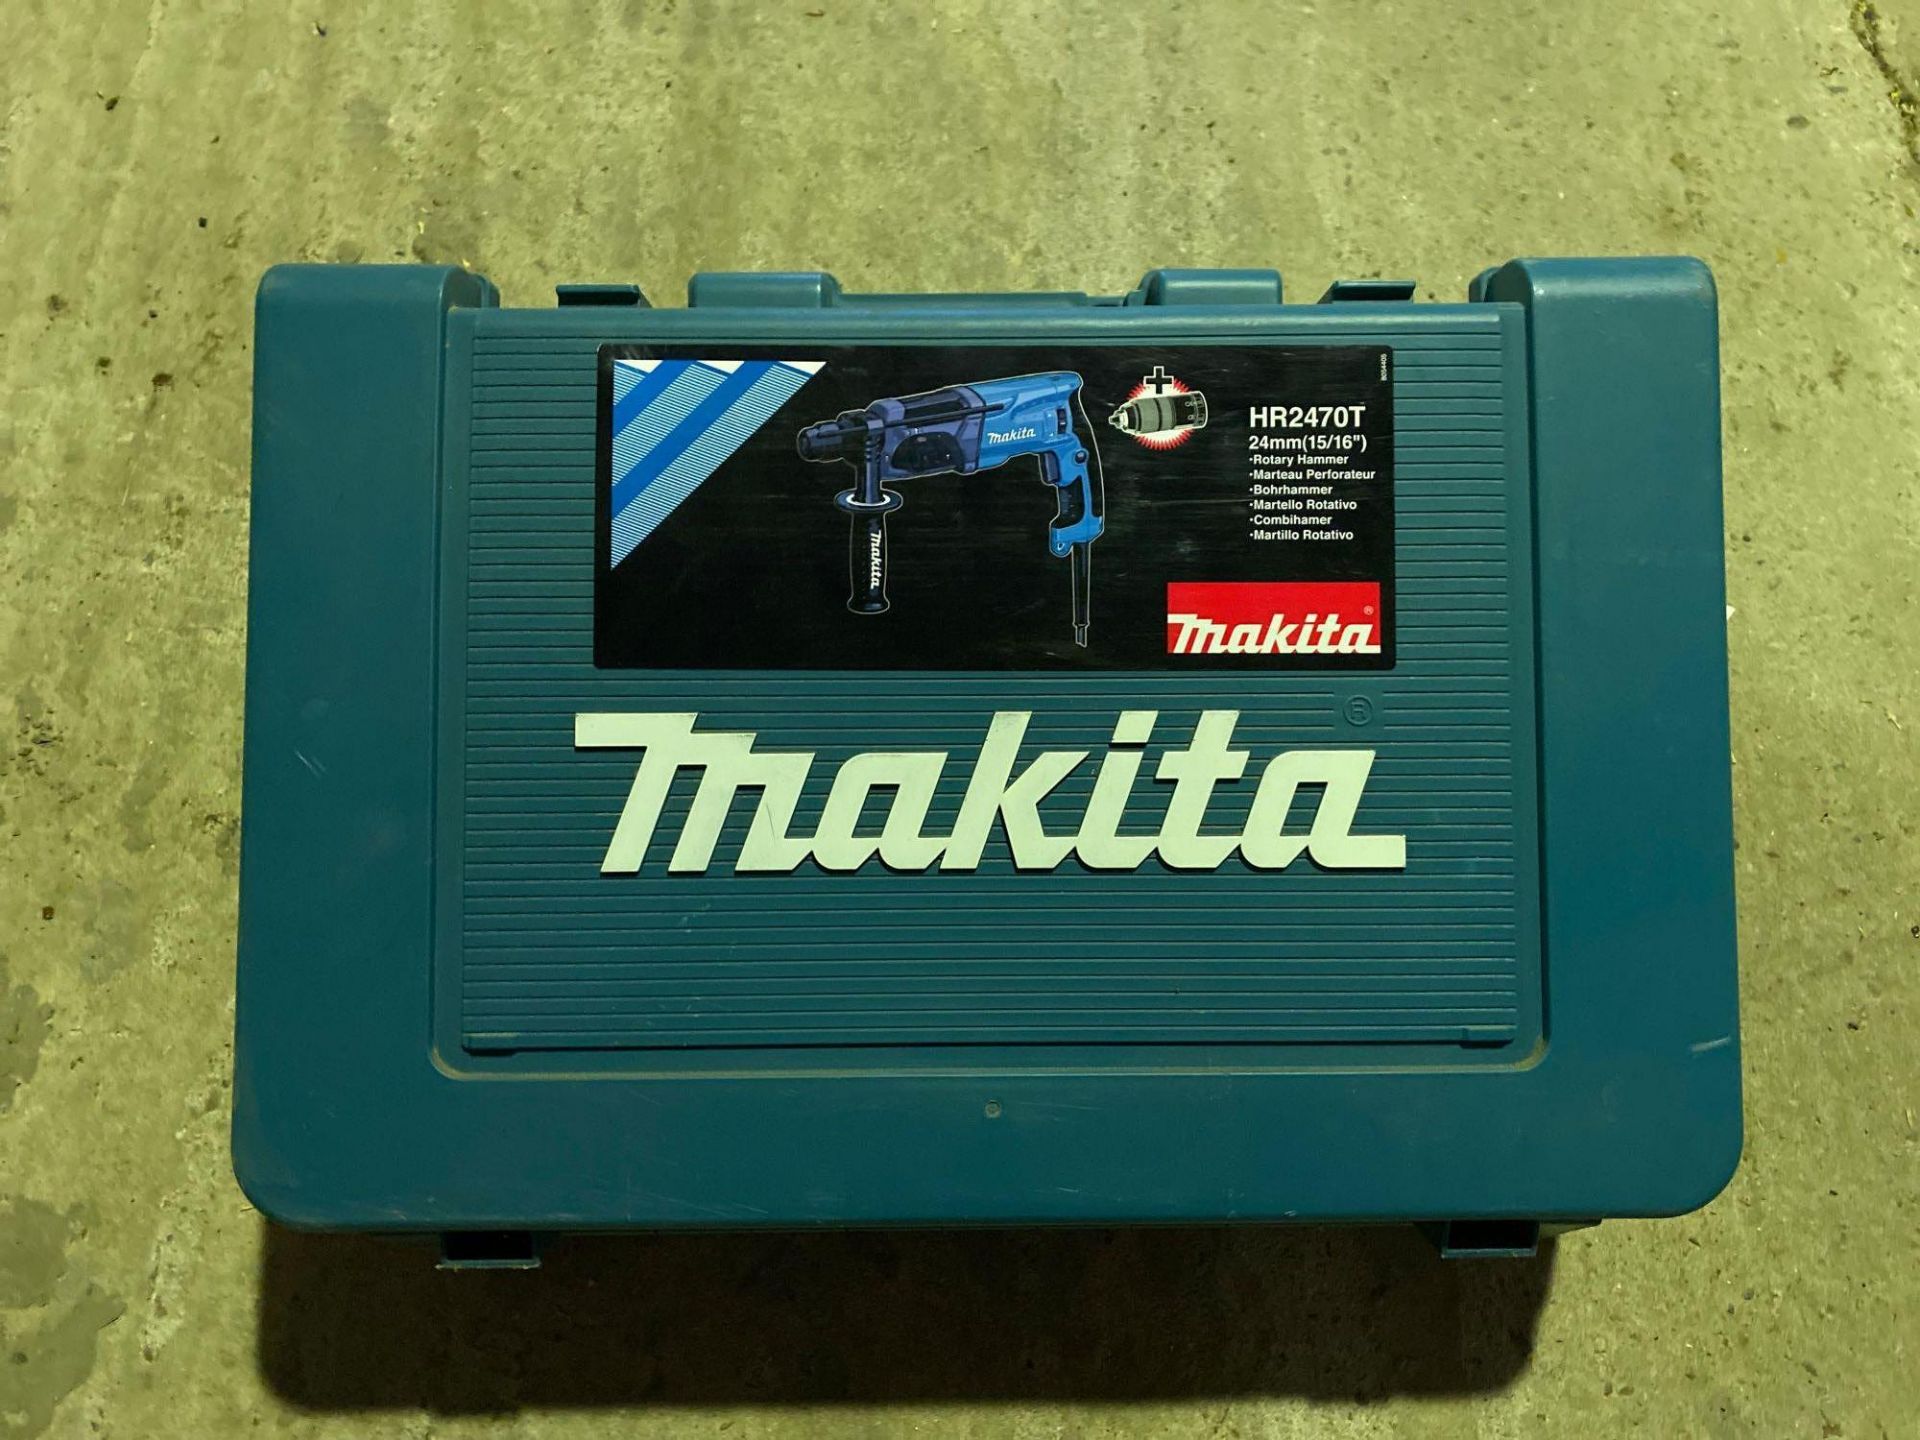 Makita HR2470 T 24mm hammer drill - Image 2 of 2